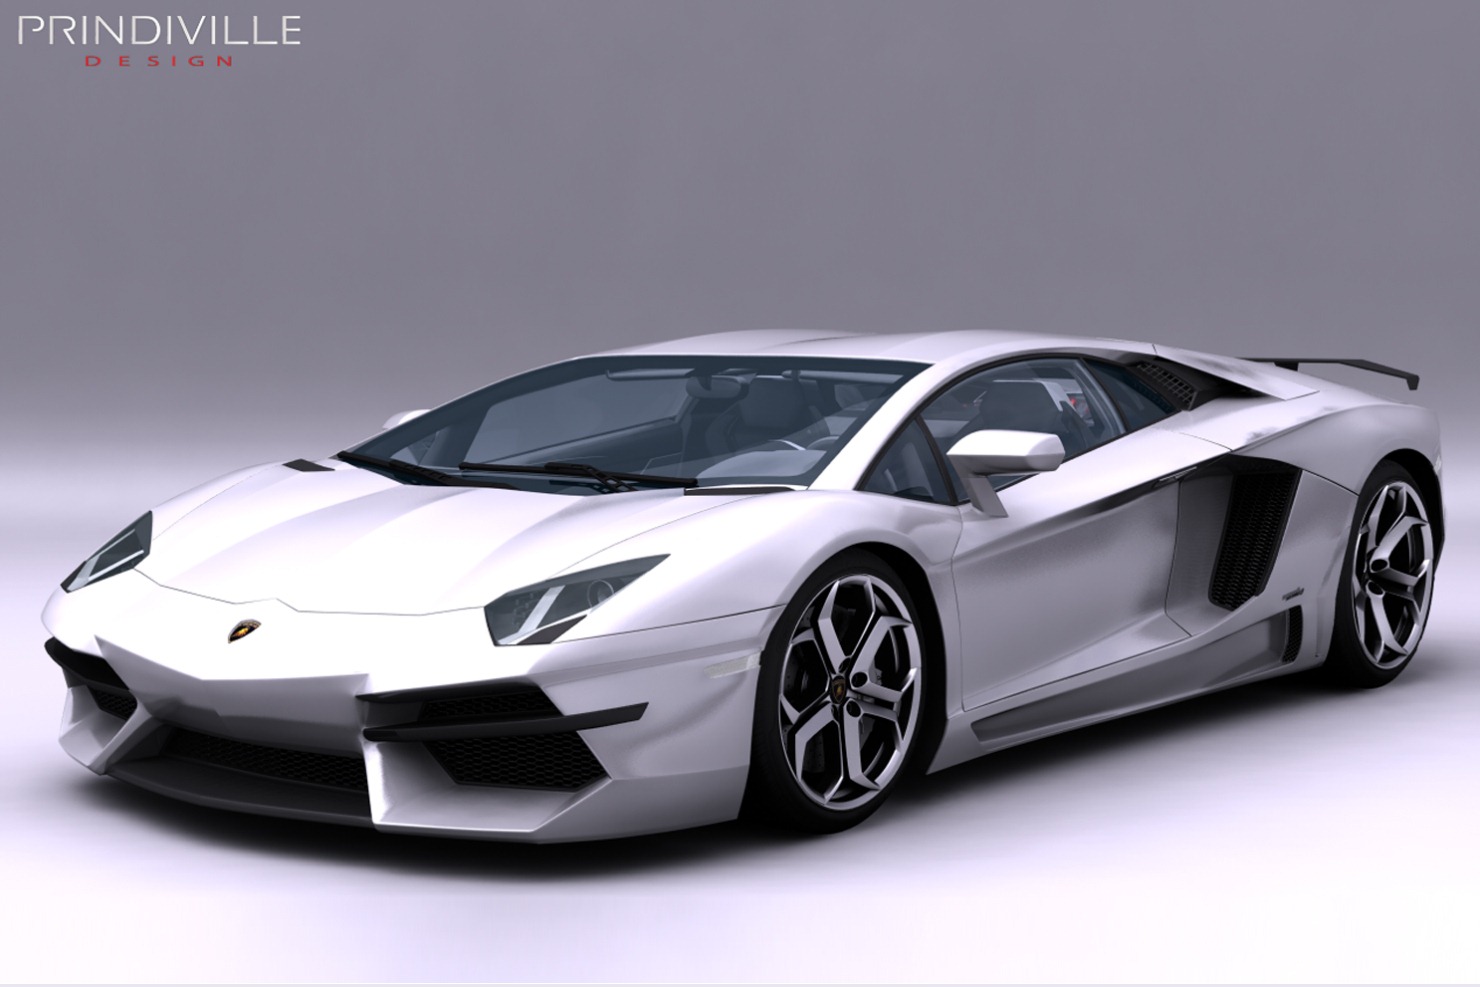 Gambar Modifikasi Mobil Lamborghini Modif Mobil